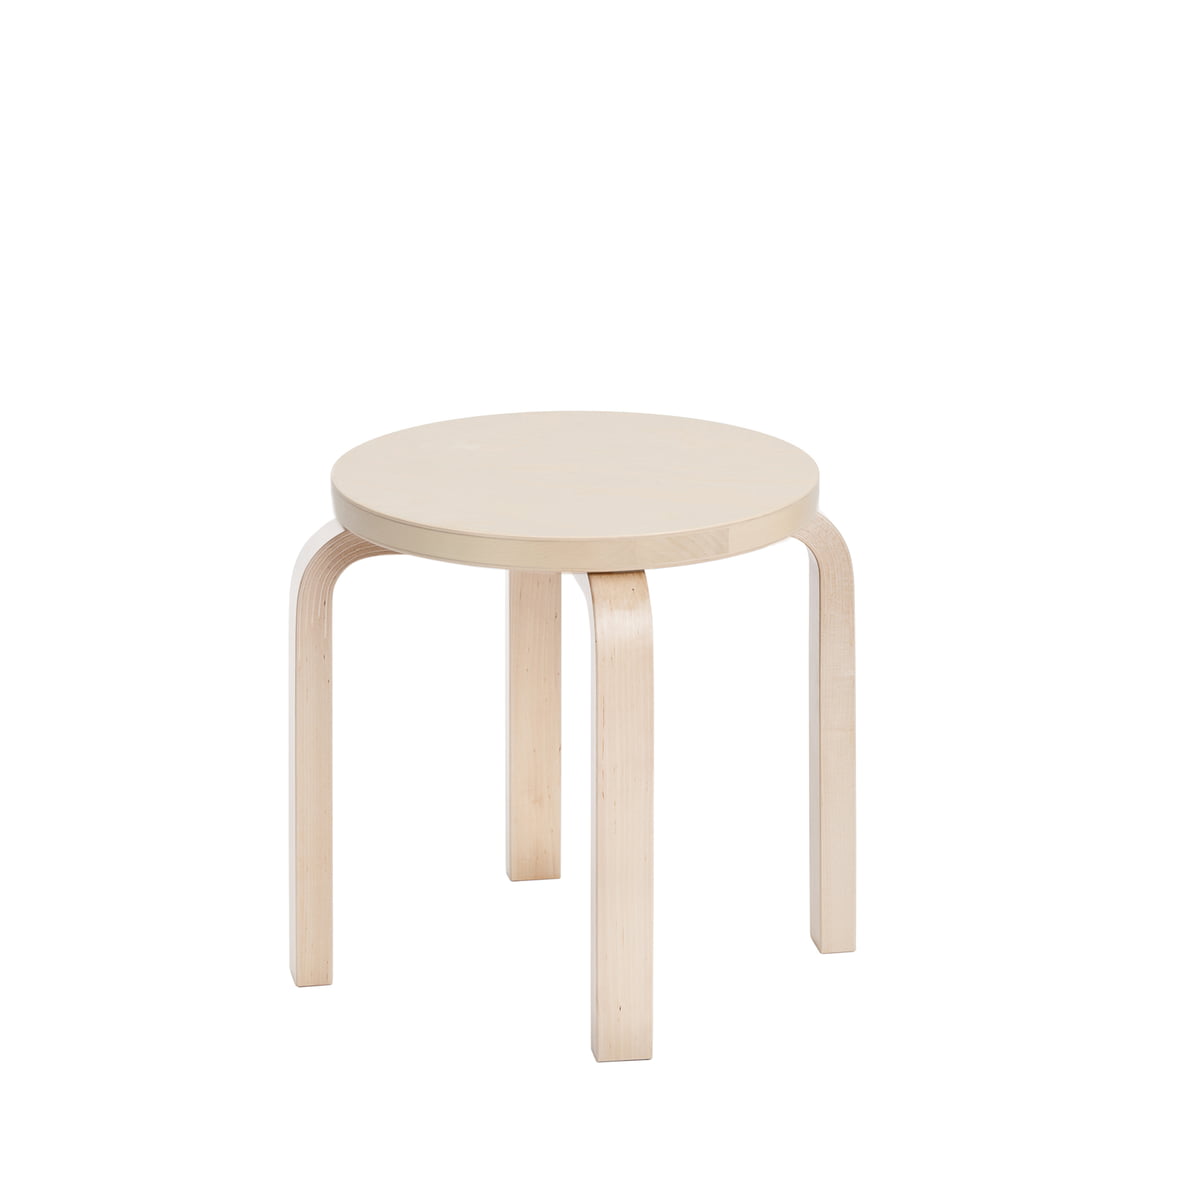 children's stool